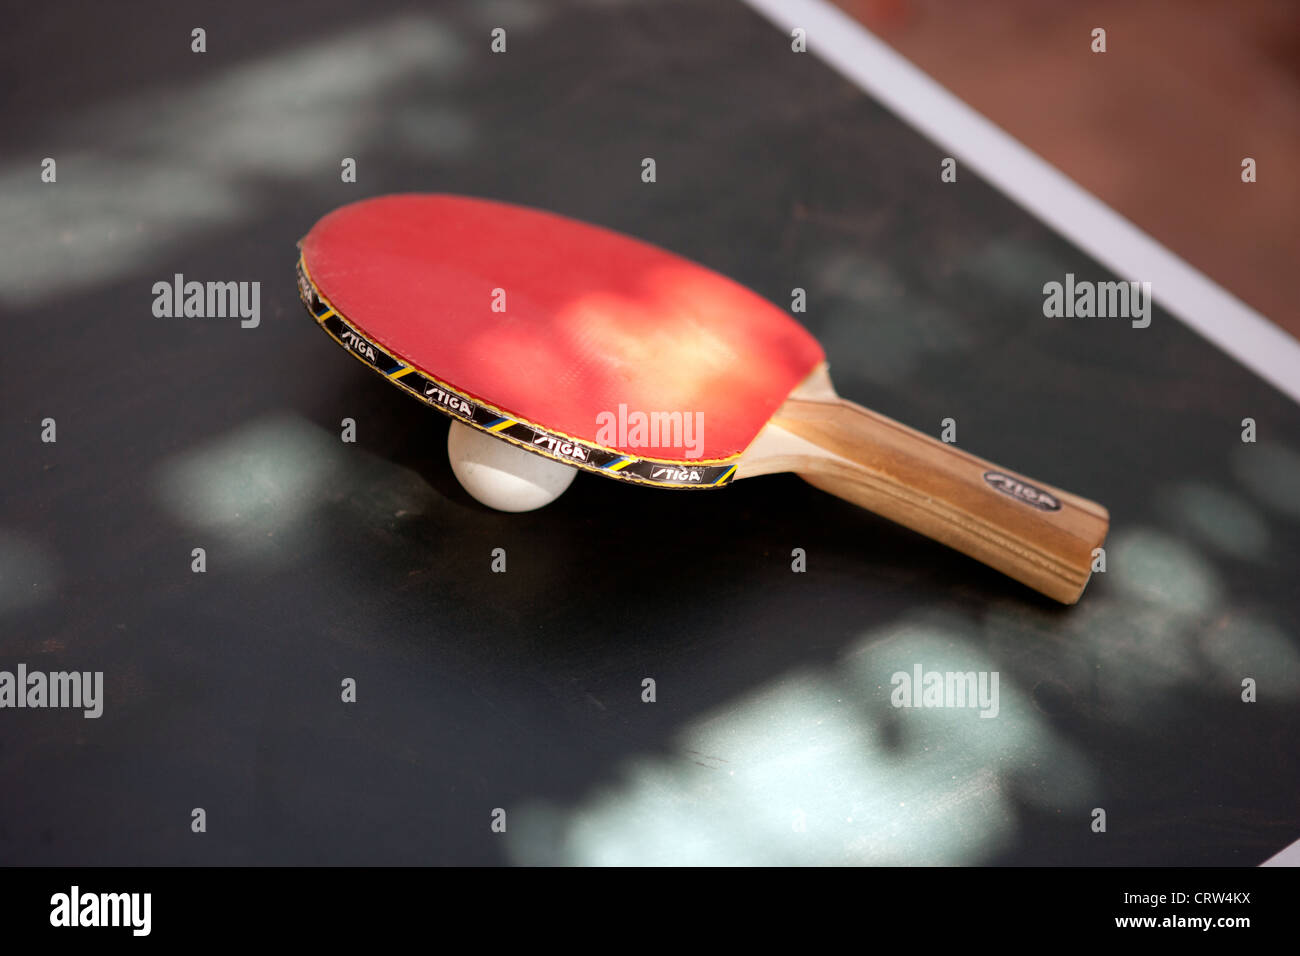 Ping pong paddle ball et tennis de table sur une surface. Banque D'Images